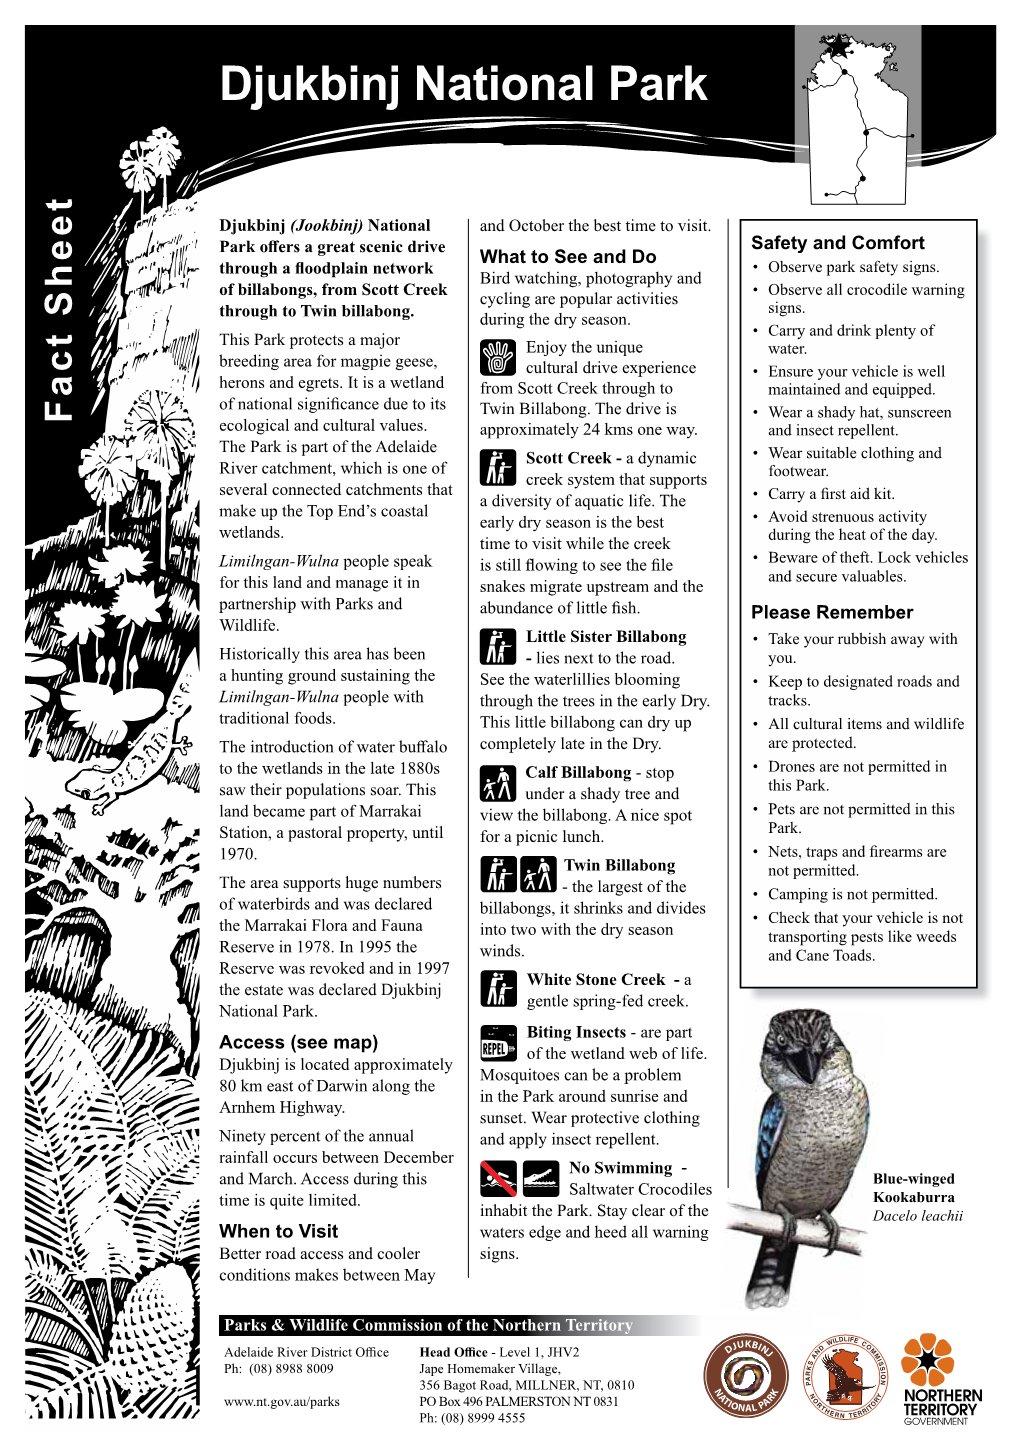 Djukbinj National Park Fact Sheet And